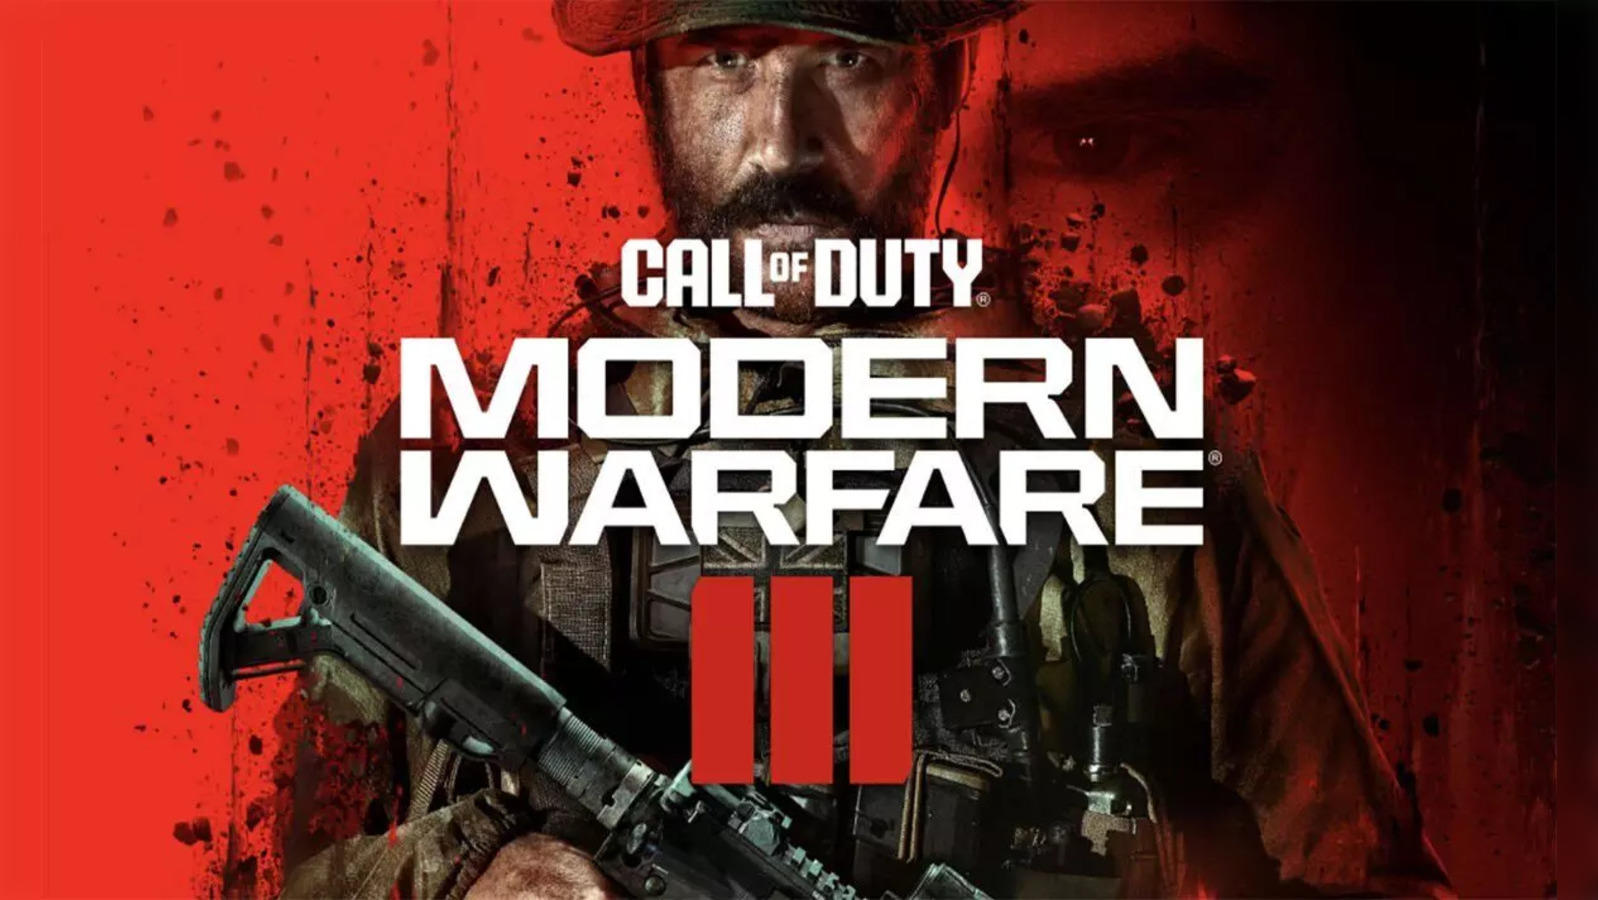 Call of Duty Modern Warfare 3 (2023) Release Date 